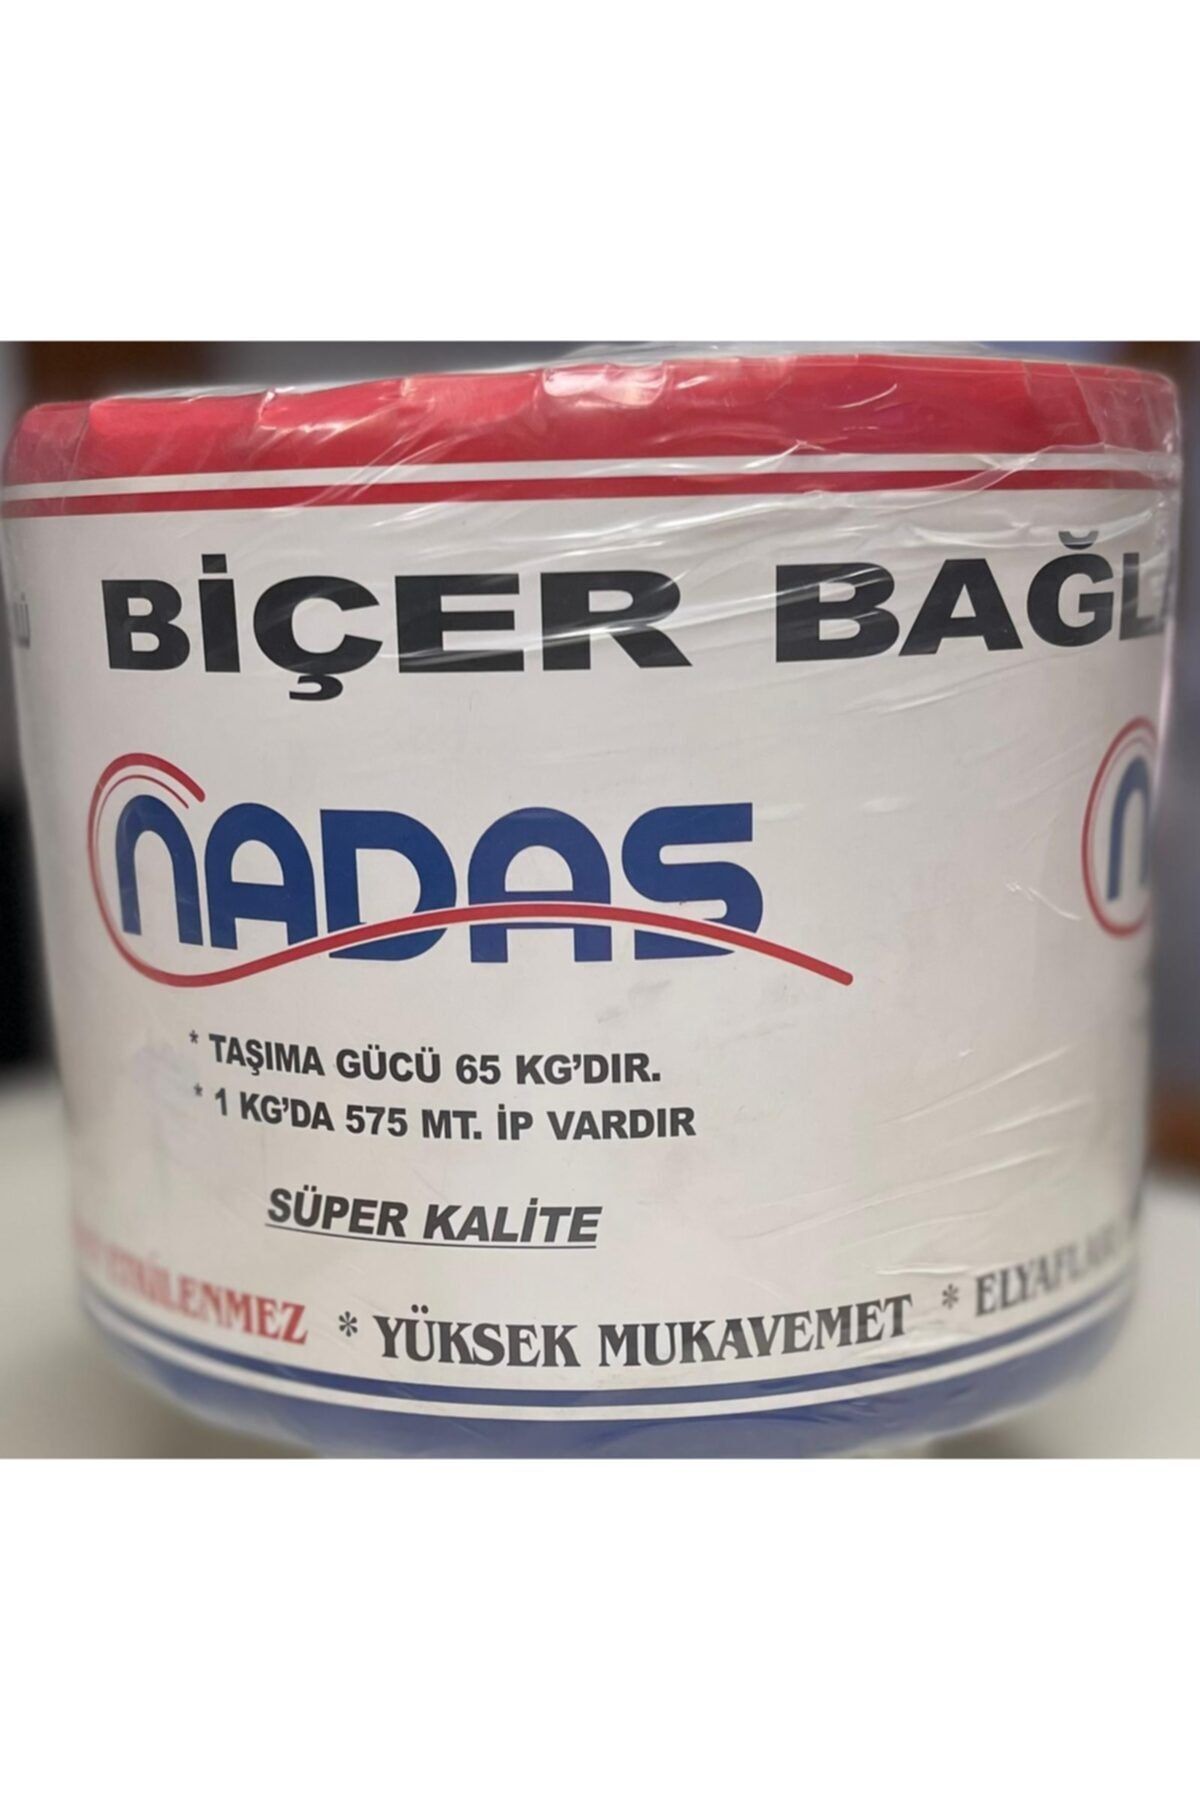 ÖZBALBAN Nadas Biçer Bağlar Balya Ipi 2000 Gr % 100 Fibrilize